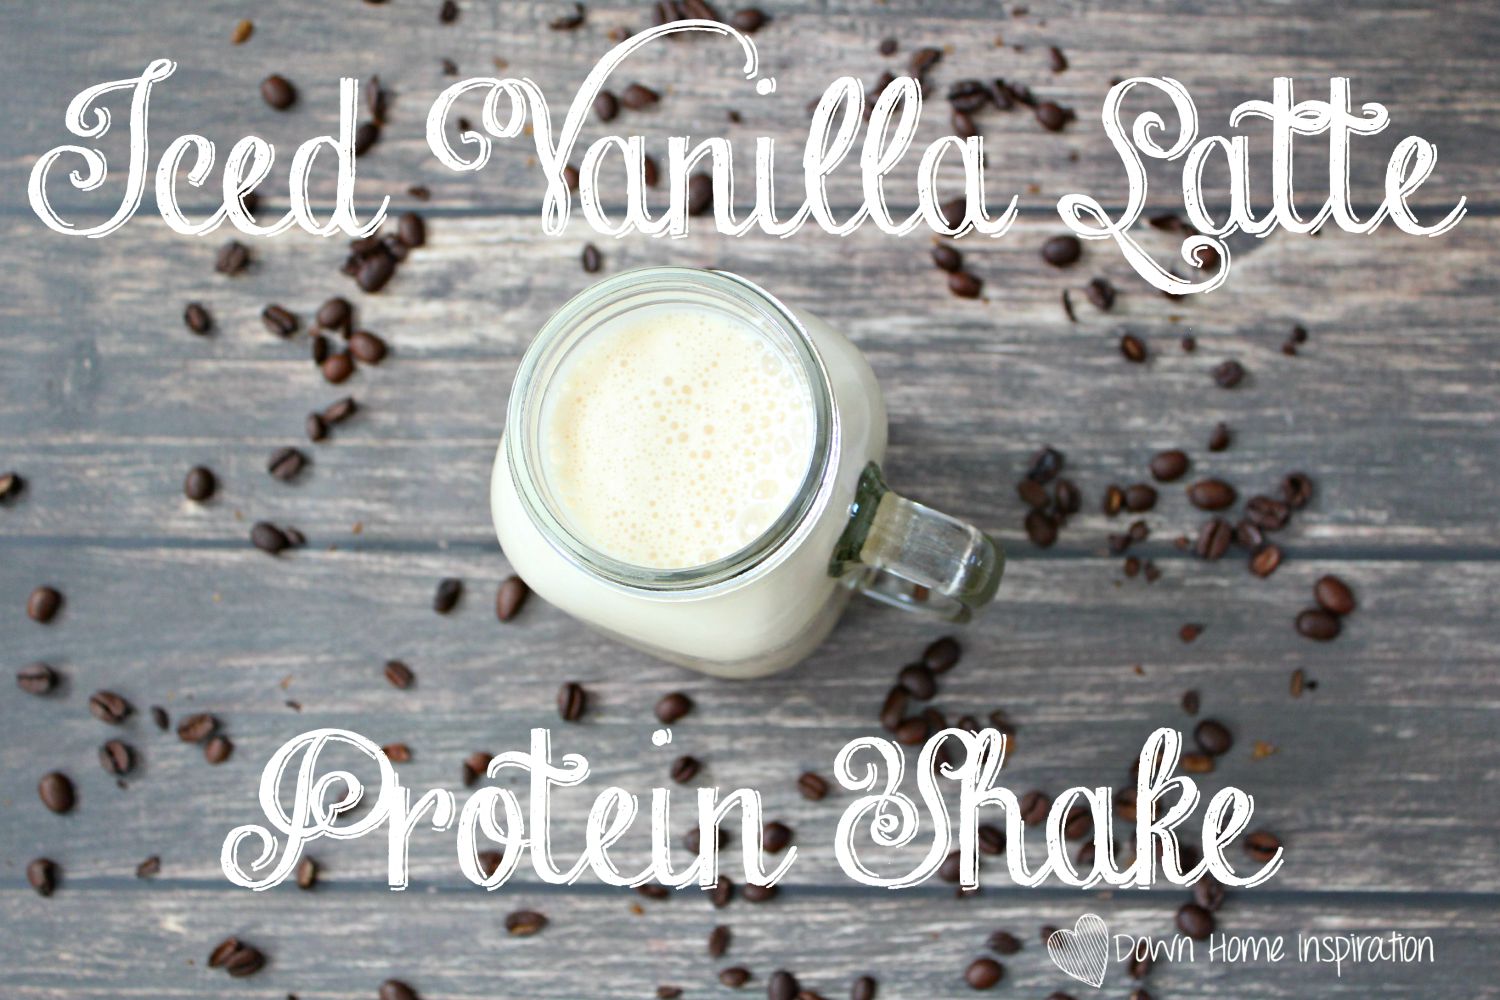 Vanilla Latte Protein Shake